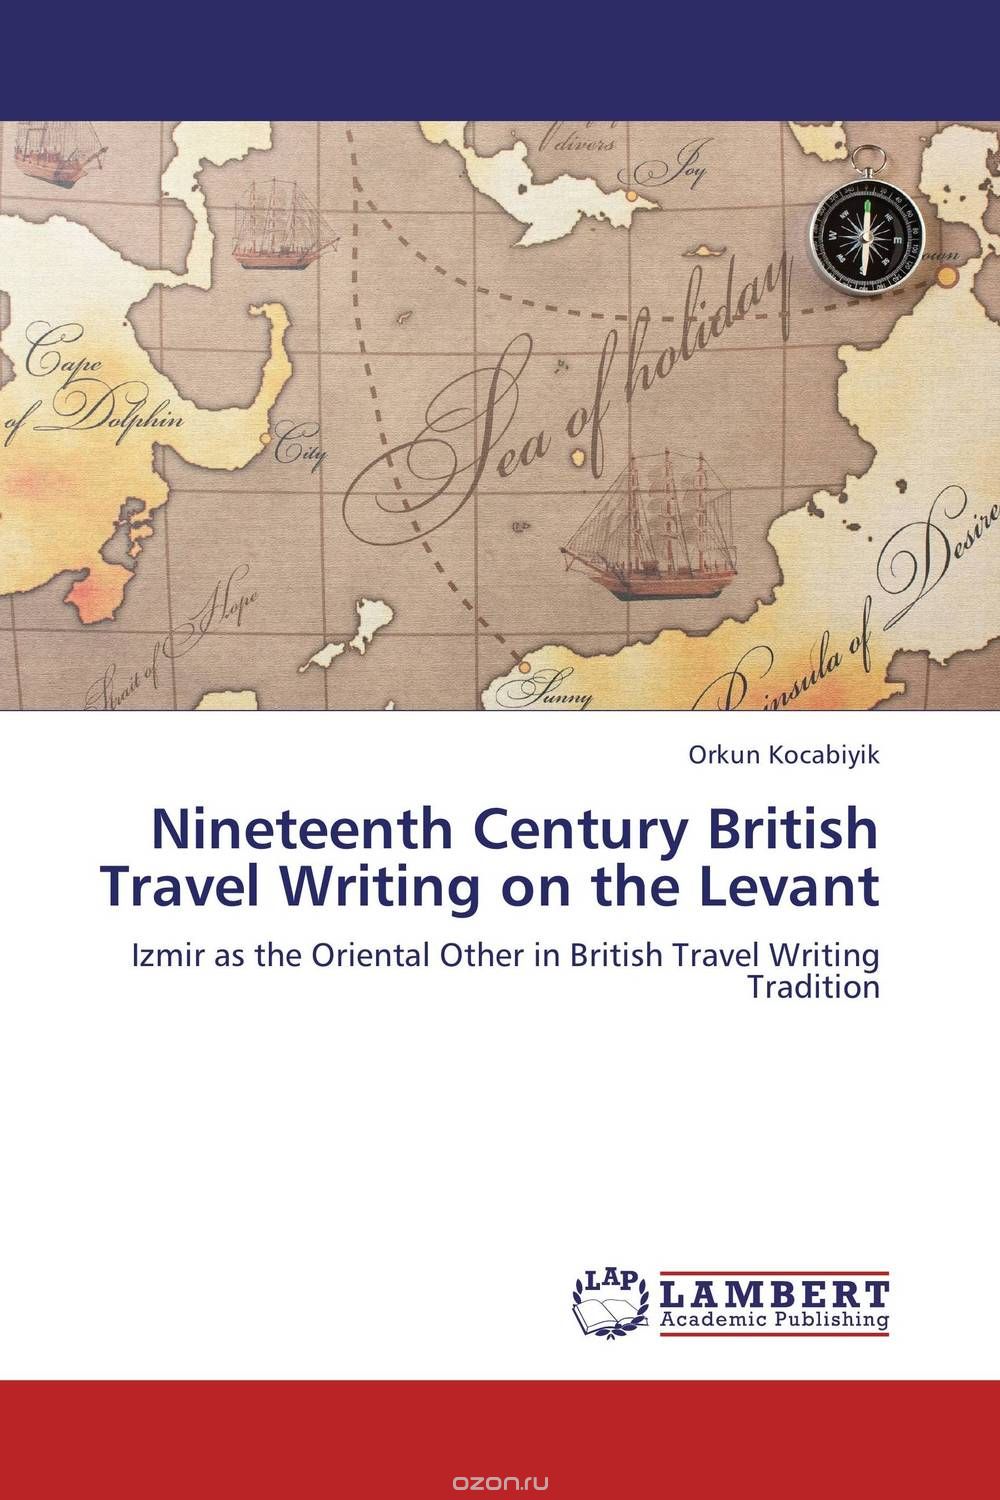 Скачать книгу "Nineteenth Century British Travel Writing on the Levant"